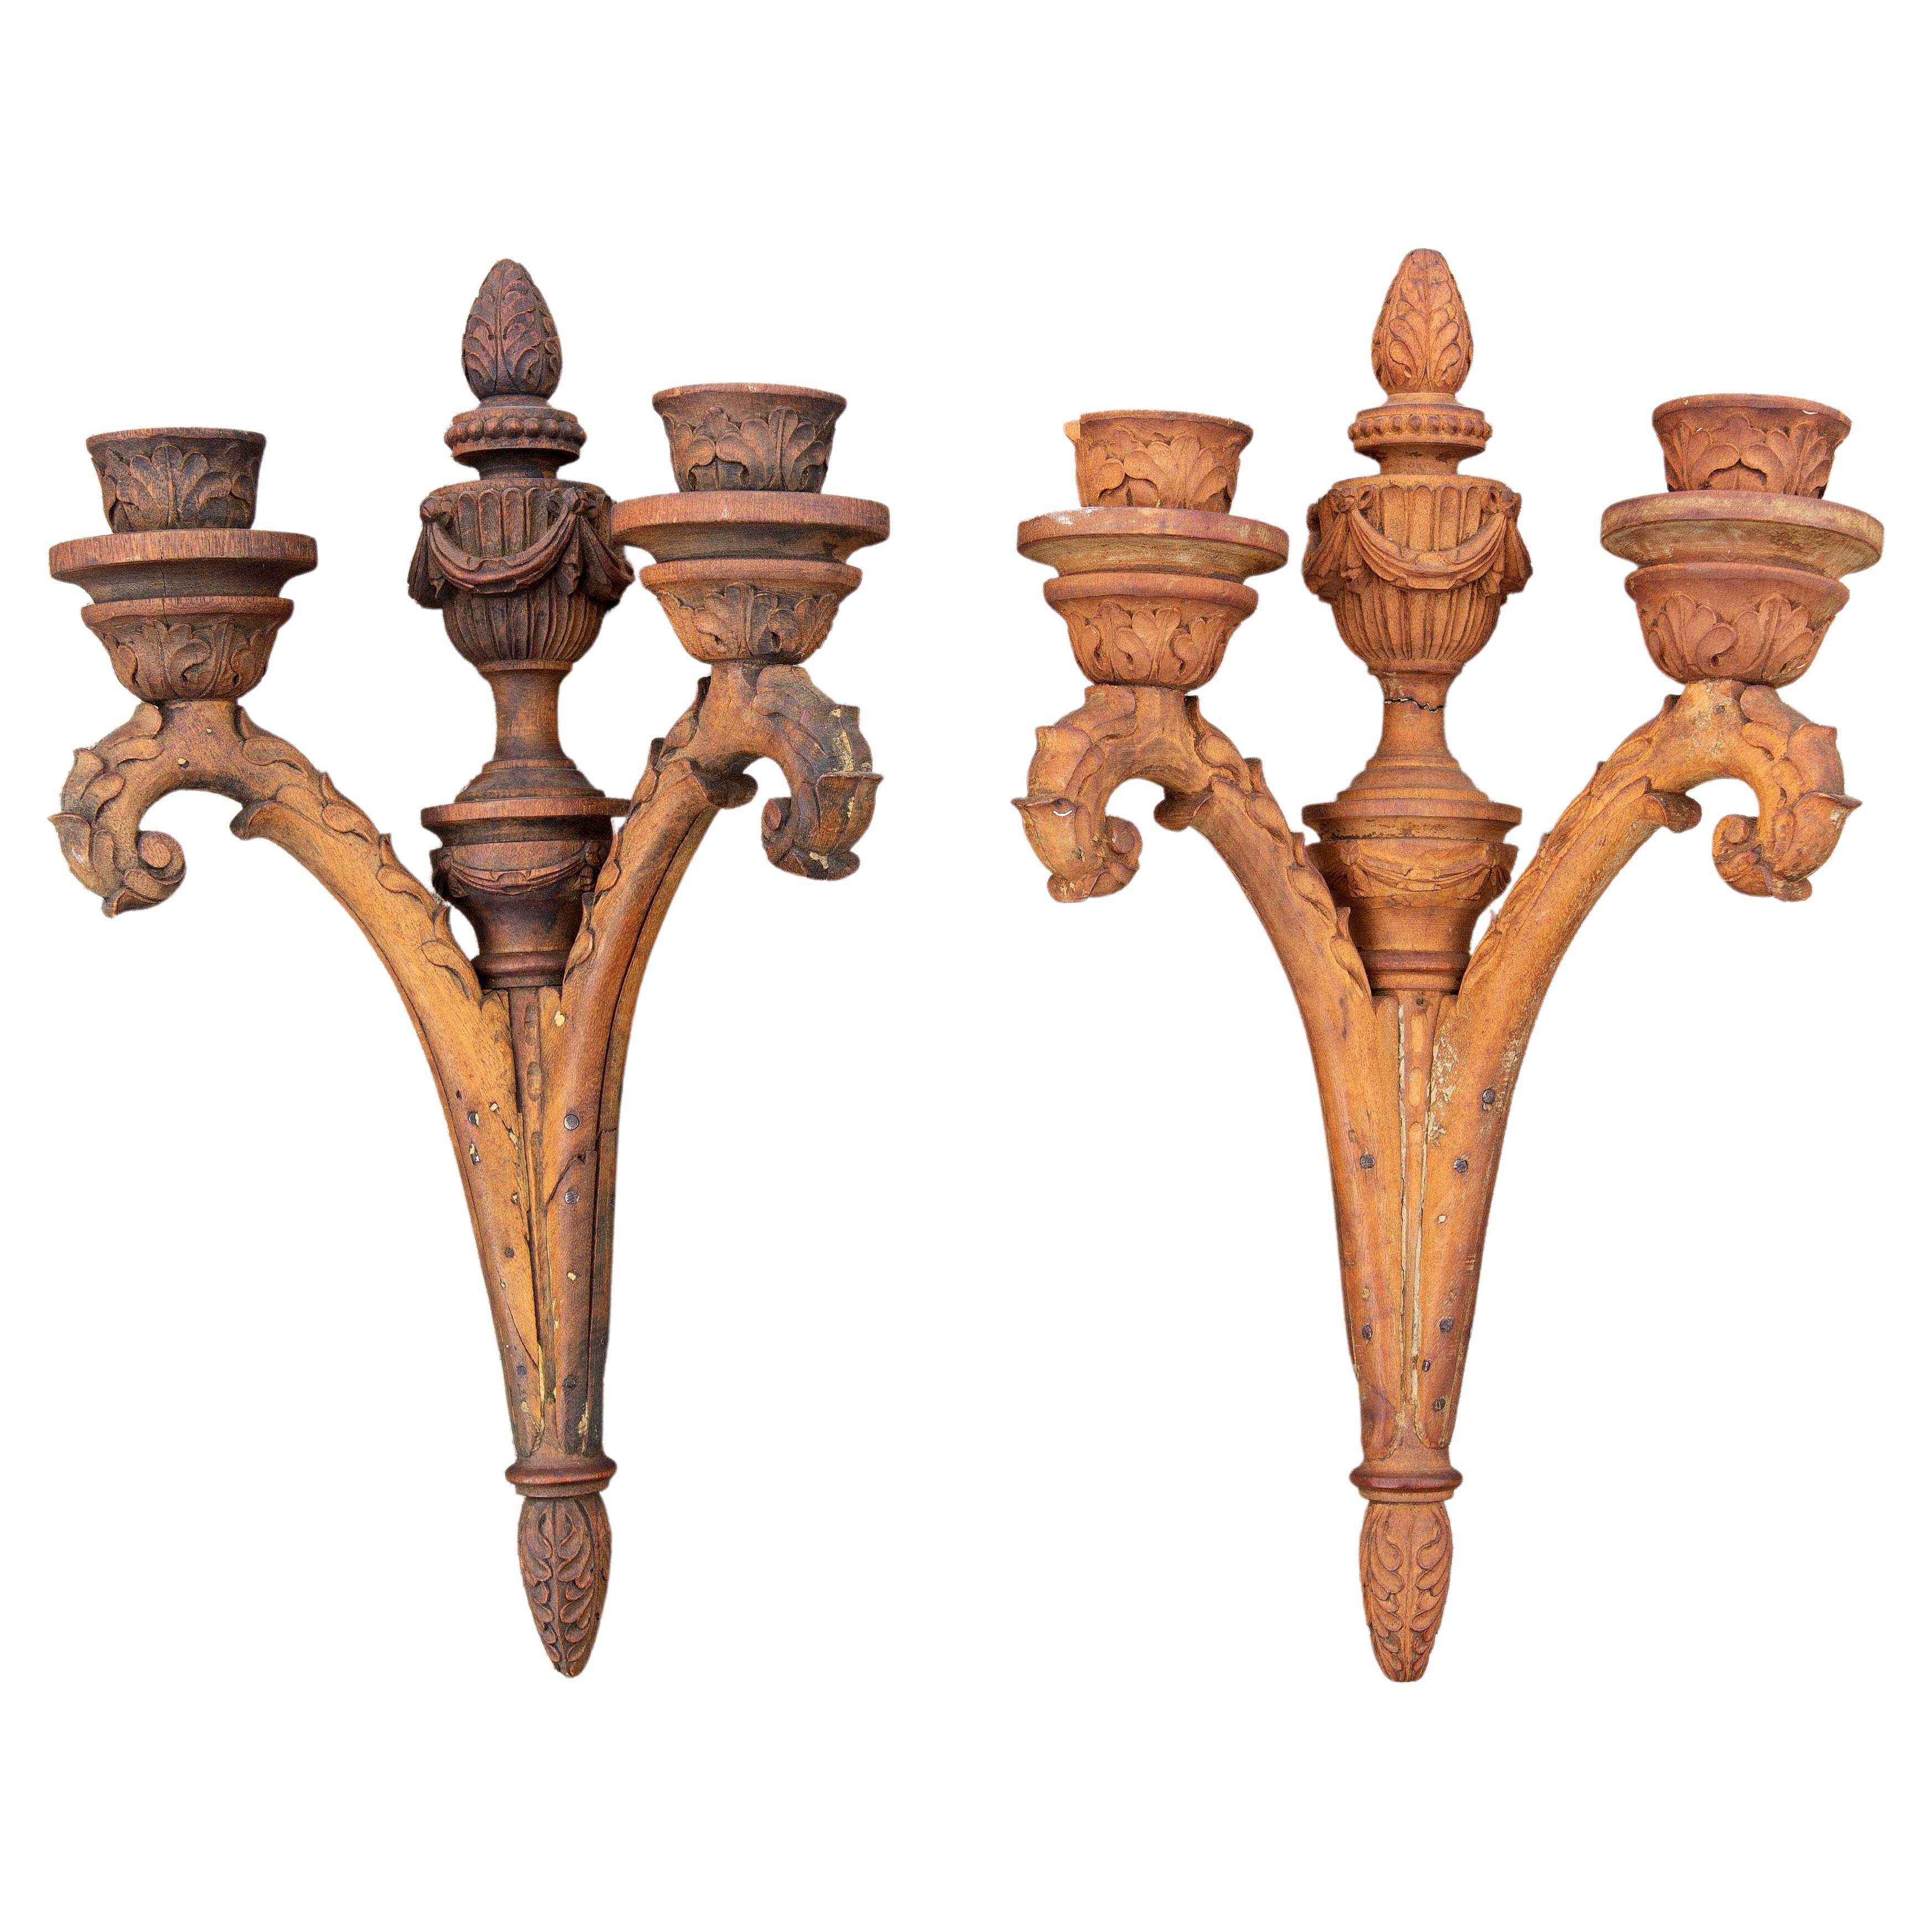 Paire d'appliques néoclassiques en bois sculpté du XIXe siècle, style néoclassique